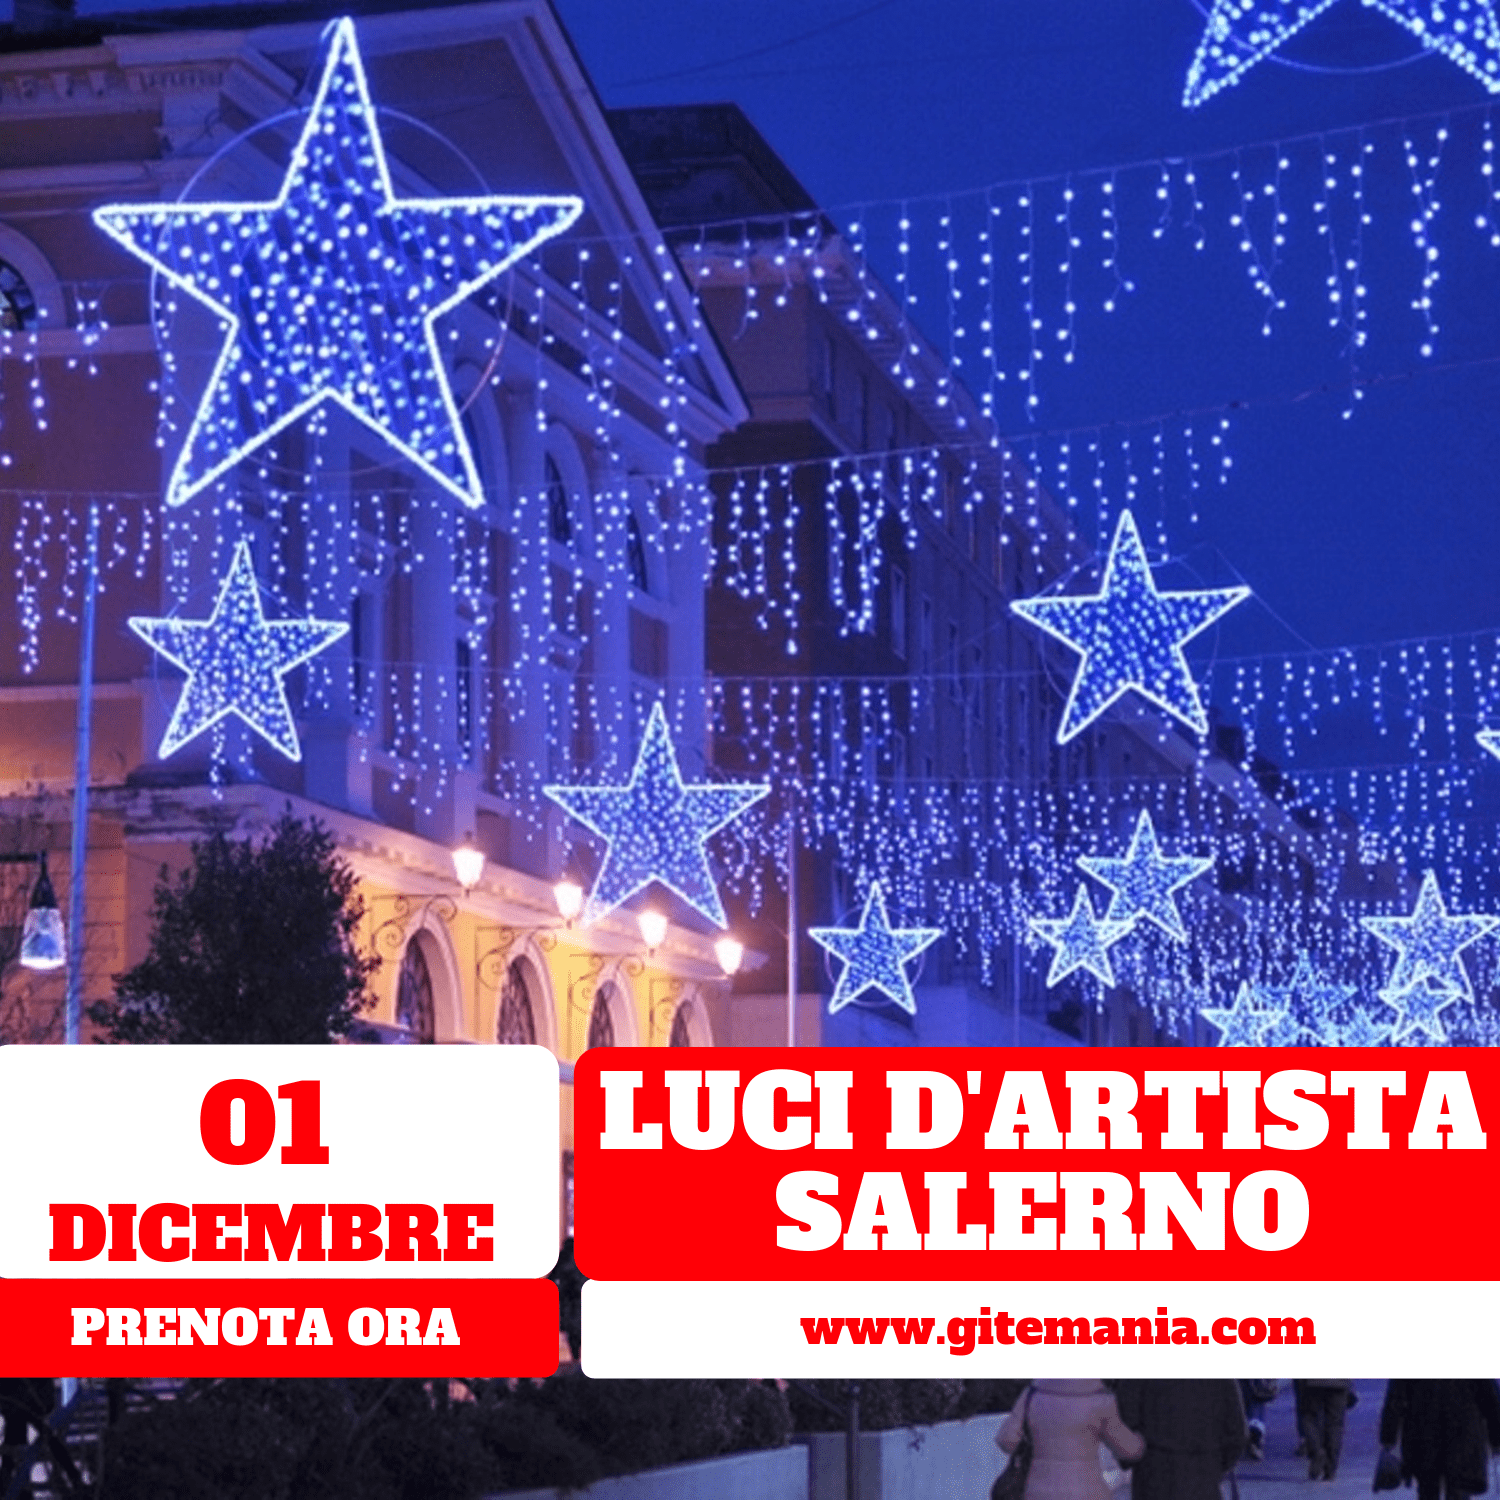 Luci Di Natale Salerno.Luminarie Salerno Luci D Artista 01 Dicembre 2019 Gitemania